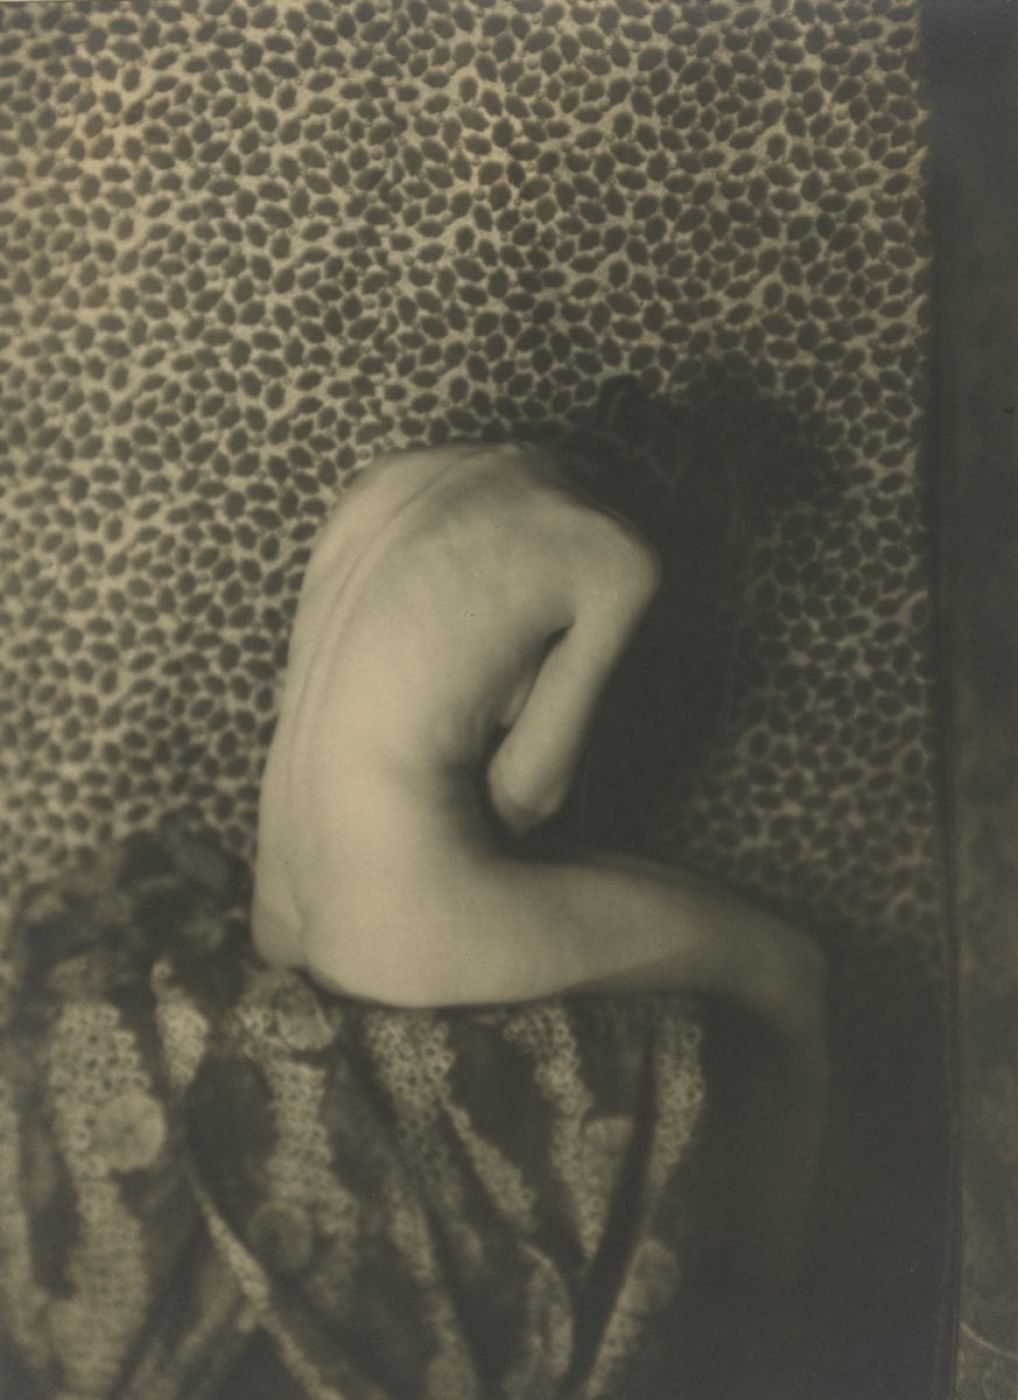 Karl Struss, “Nude”, 1919